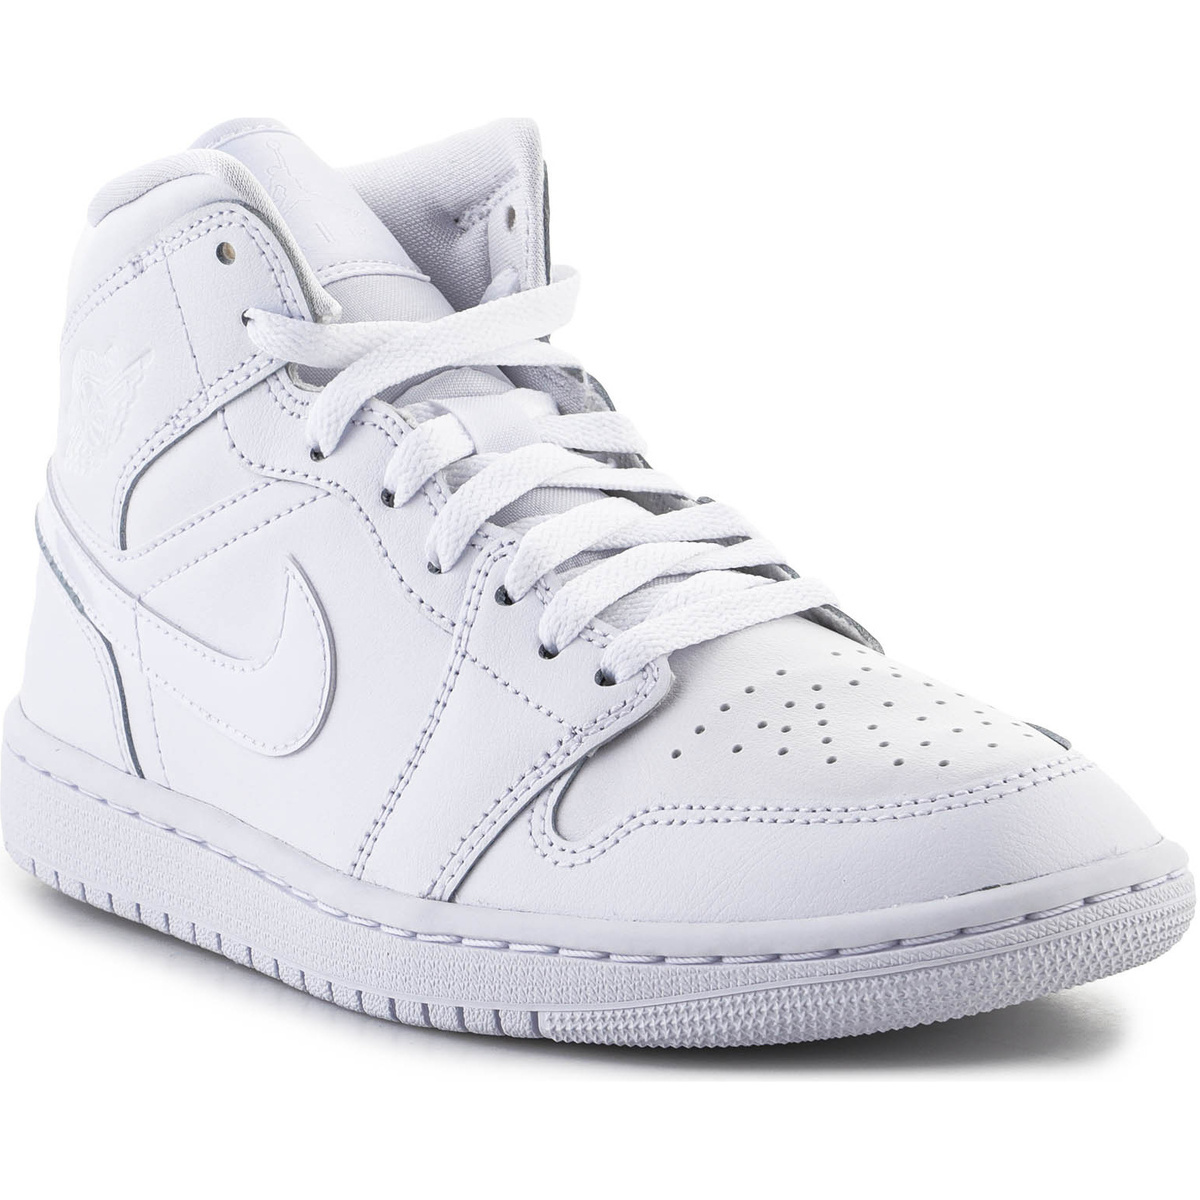 Παπούτσια του Μπάσκετ Nike Air Jordan 1 Mid DV0991111